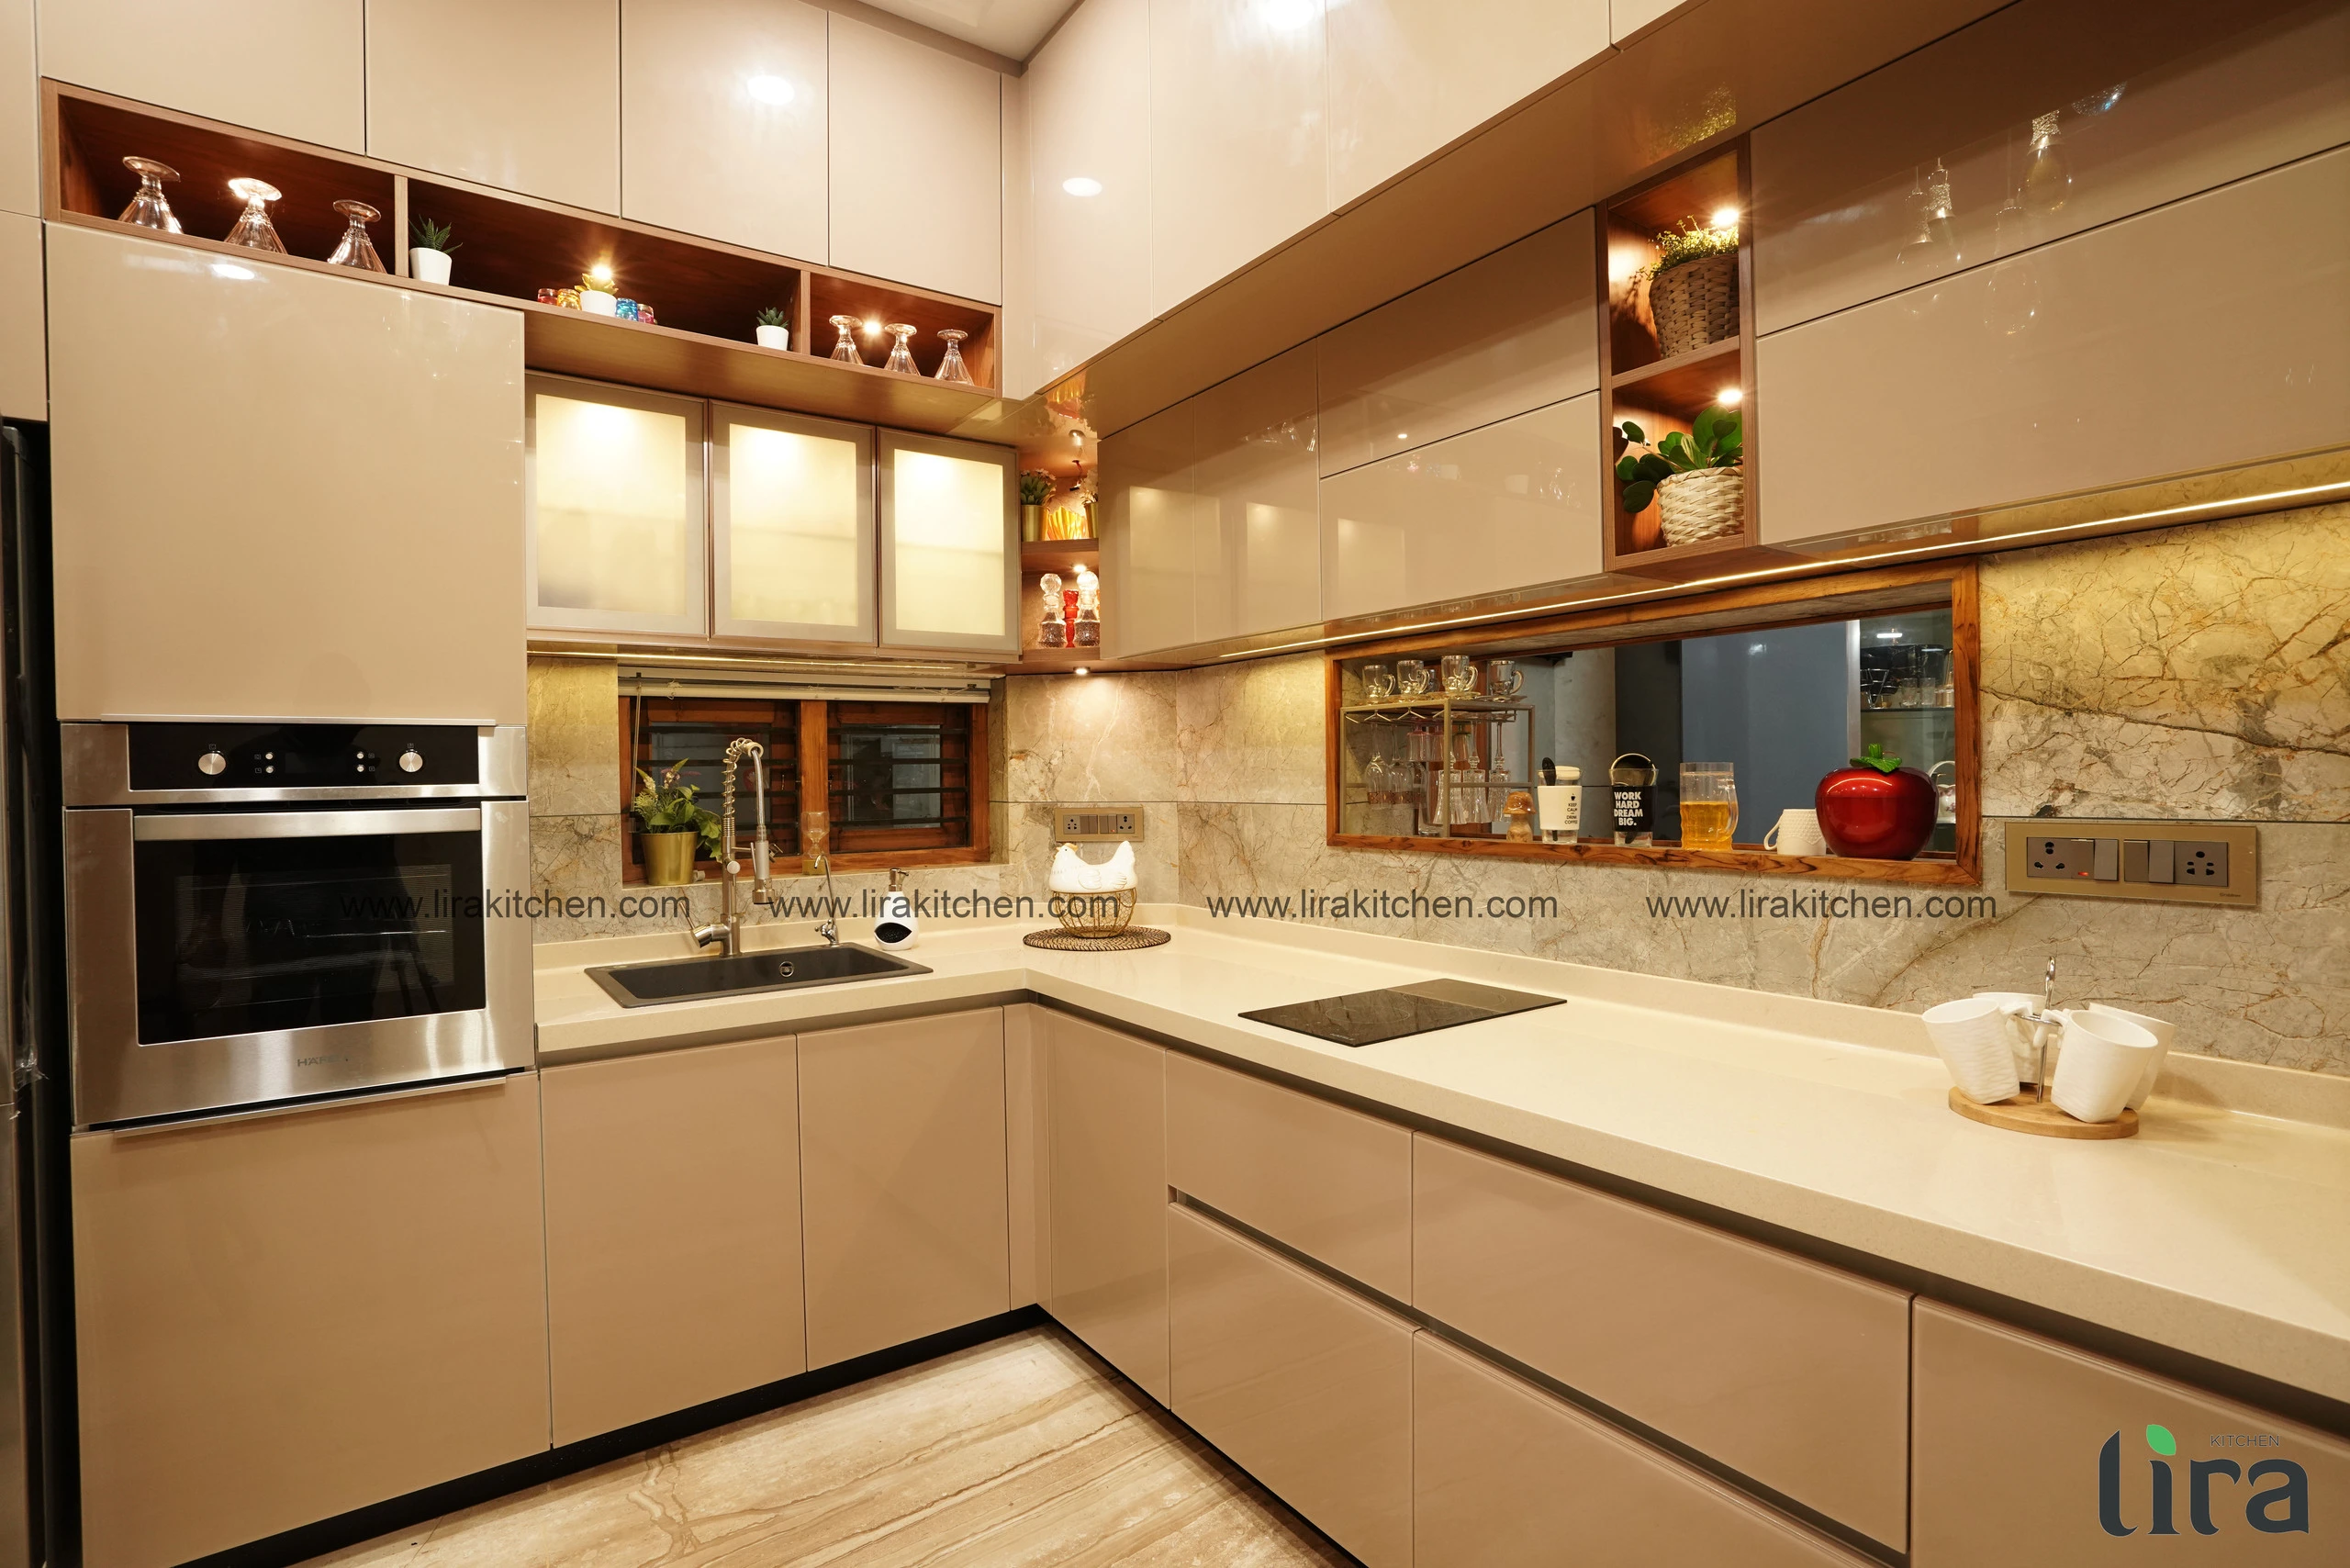 Best Modular kitchen Design in kerala